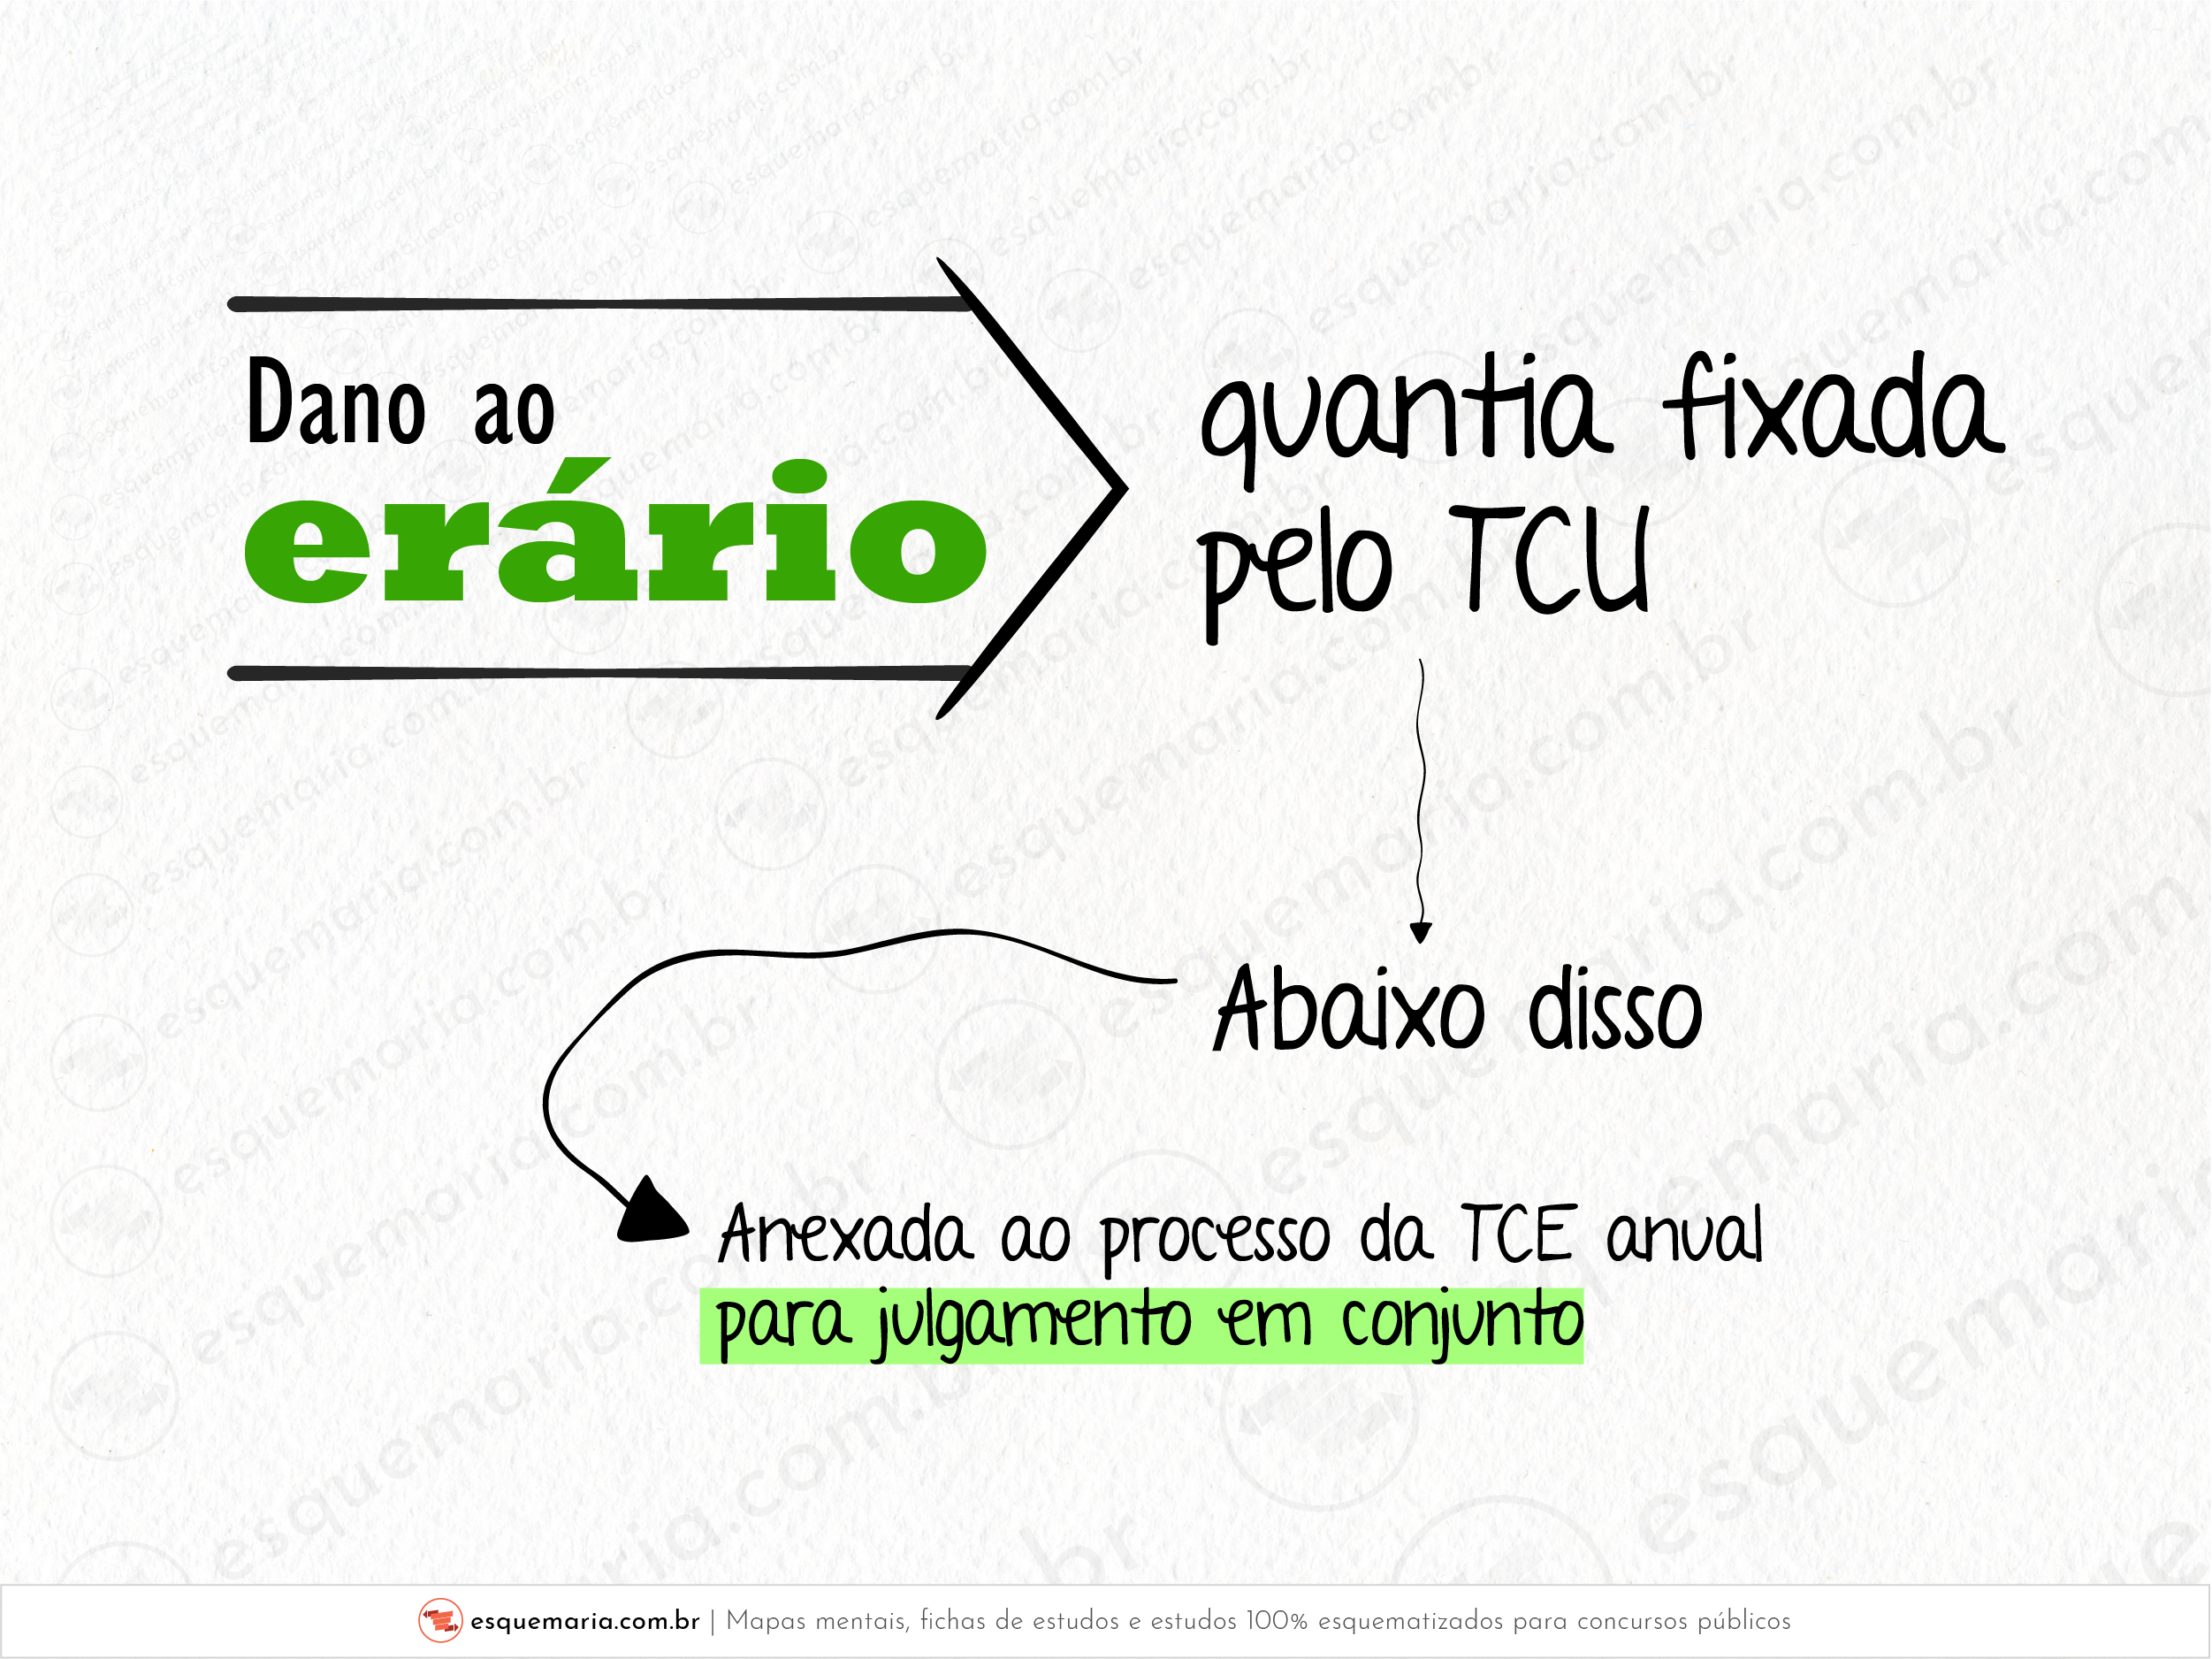 TCE - Dano ao erário - Quantia fixada pelo TCU-01